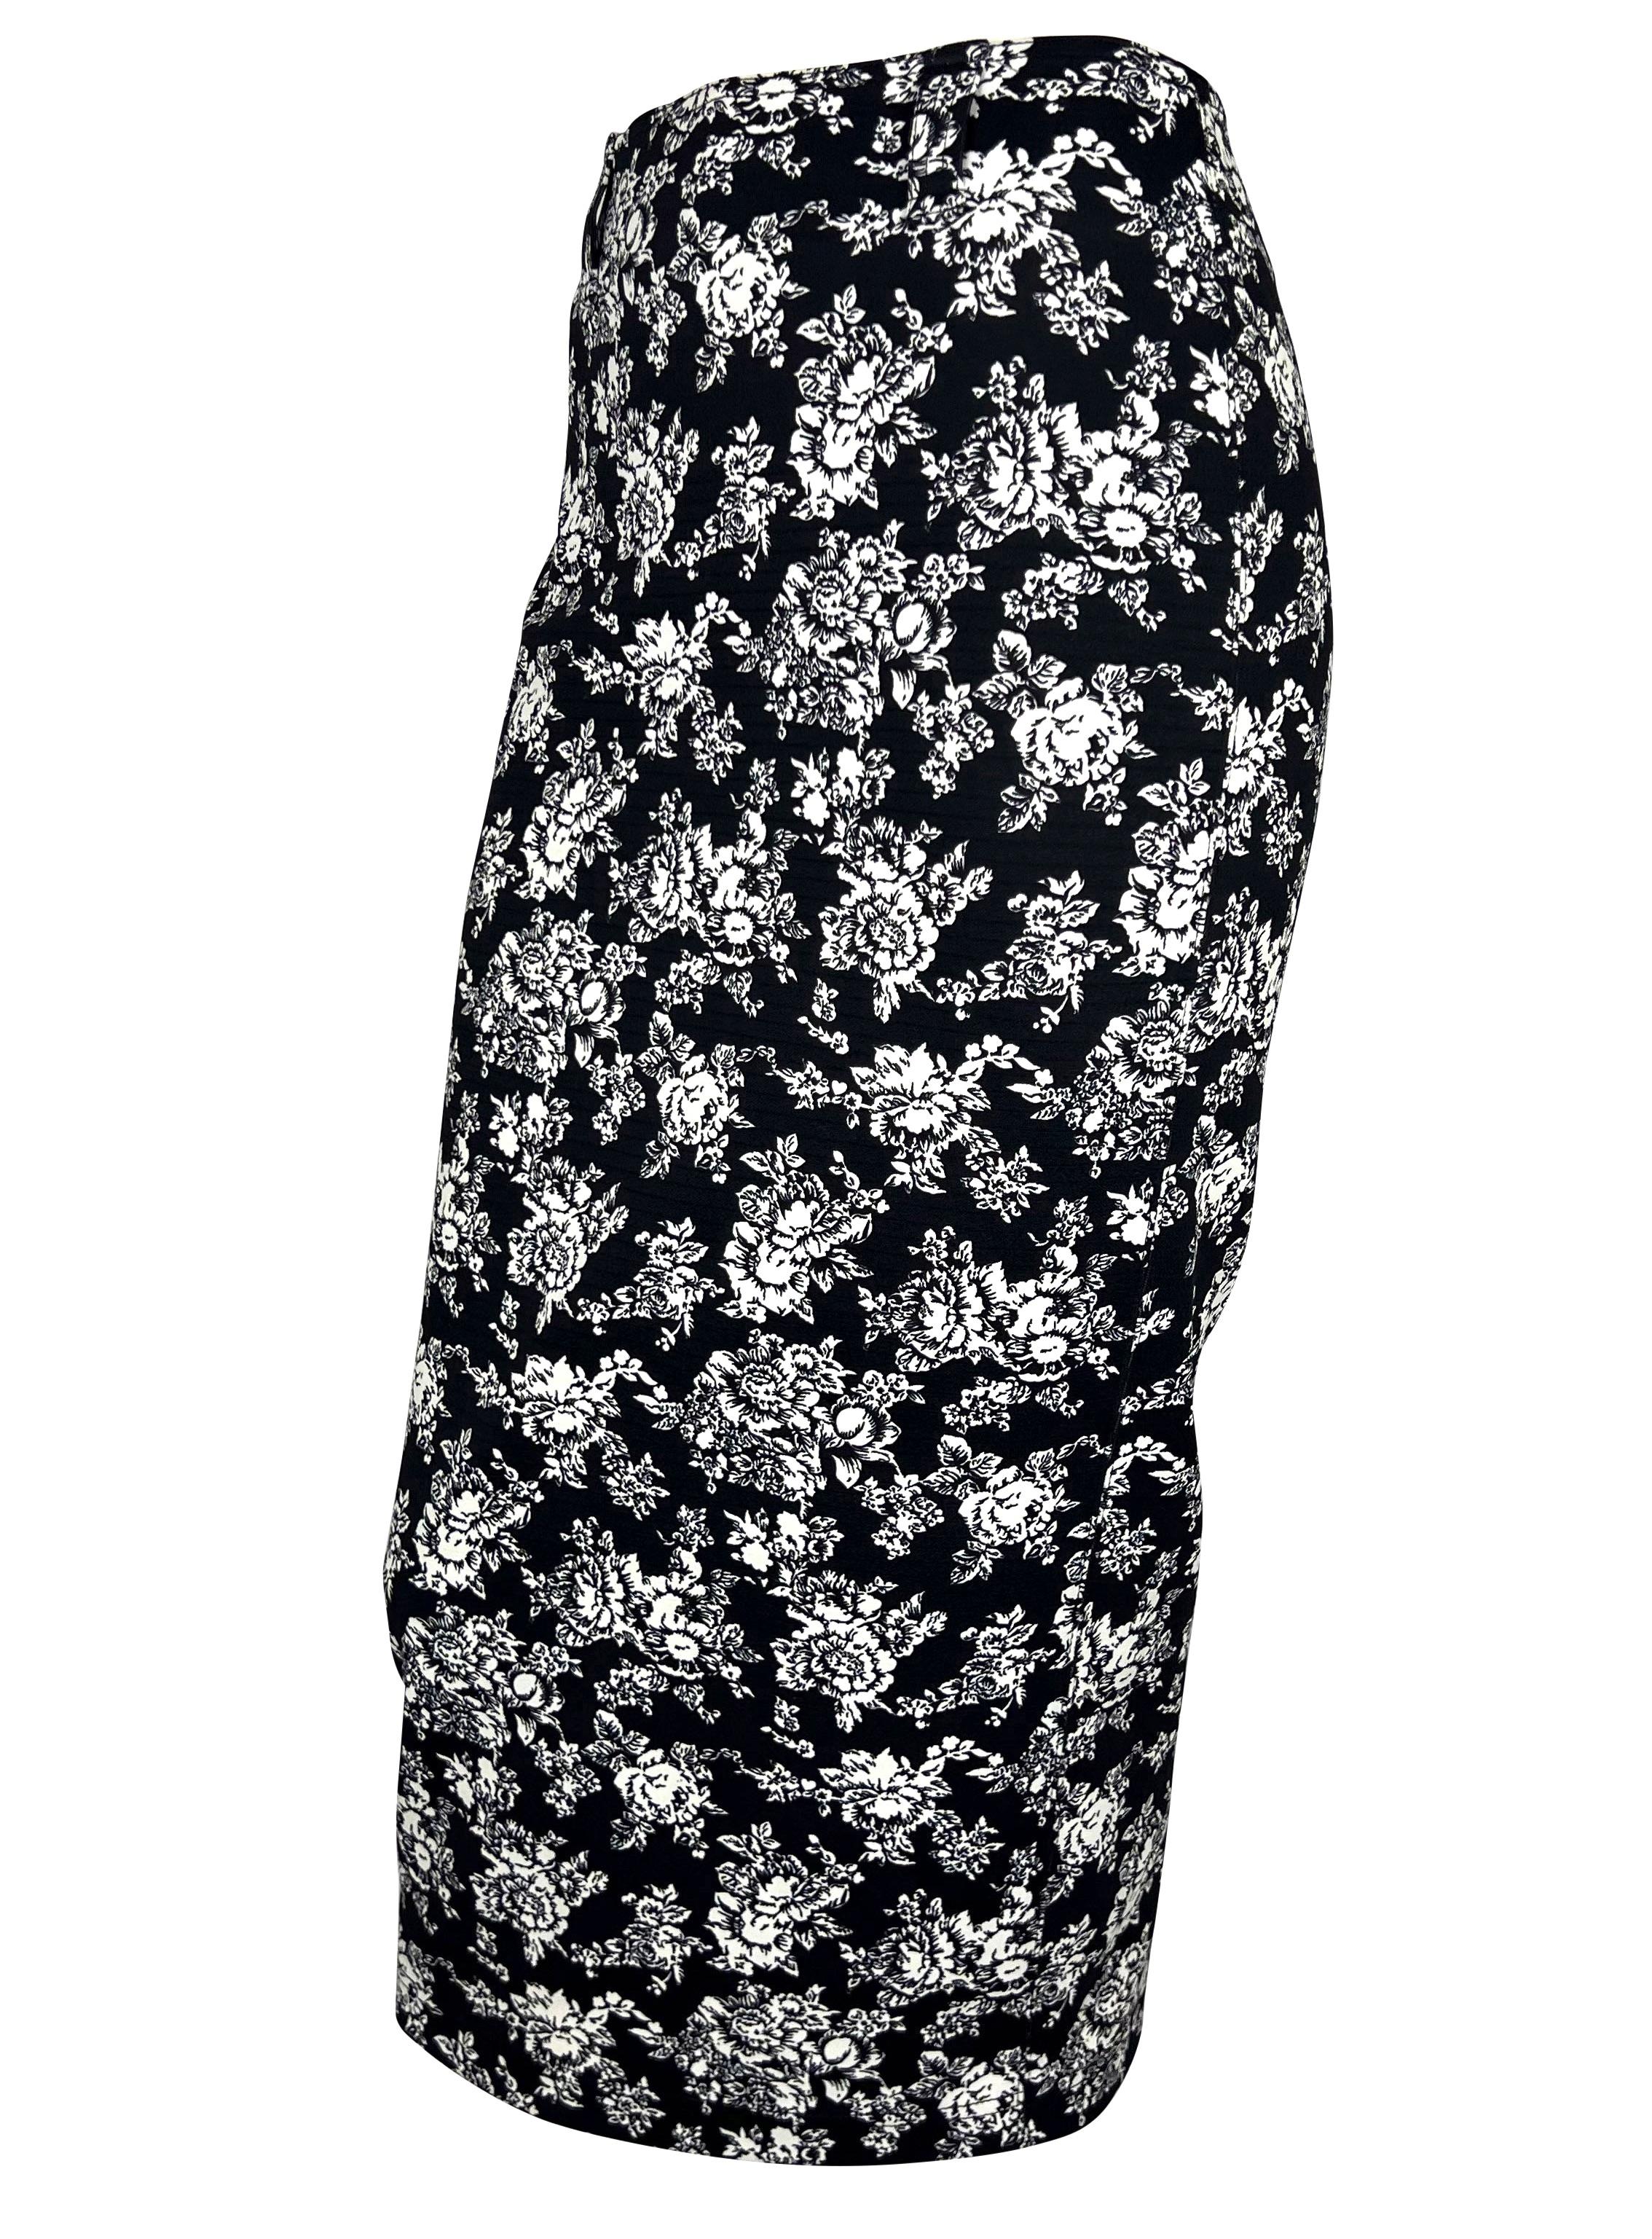 Collectional présente une jupe bodycon à fleurs noires et blanches conçue par Gianni Versace pour sa collection printemps/été 1993. L'imprimé floral est un mélange d'élasthanne et de caoutchouc qui épouse parfaitement la forme de la personne qui le